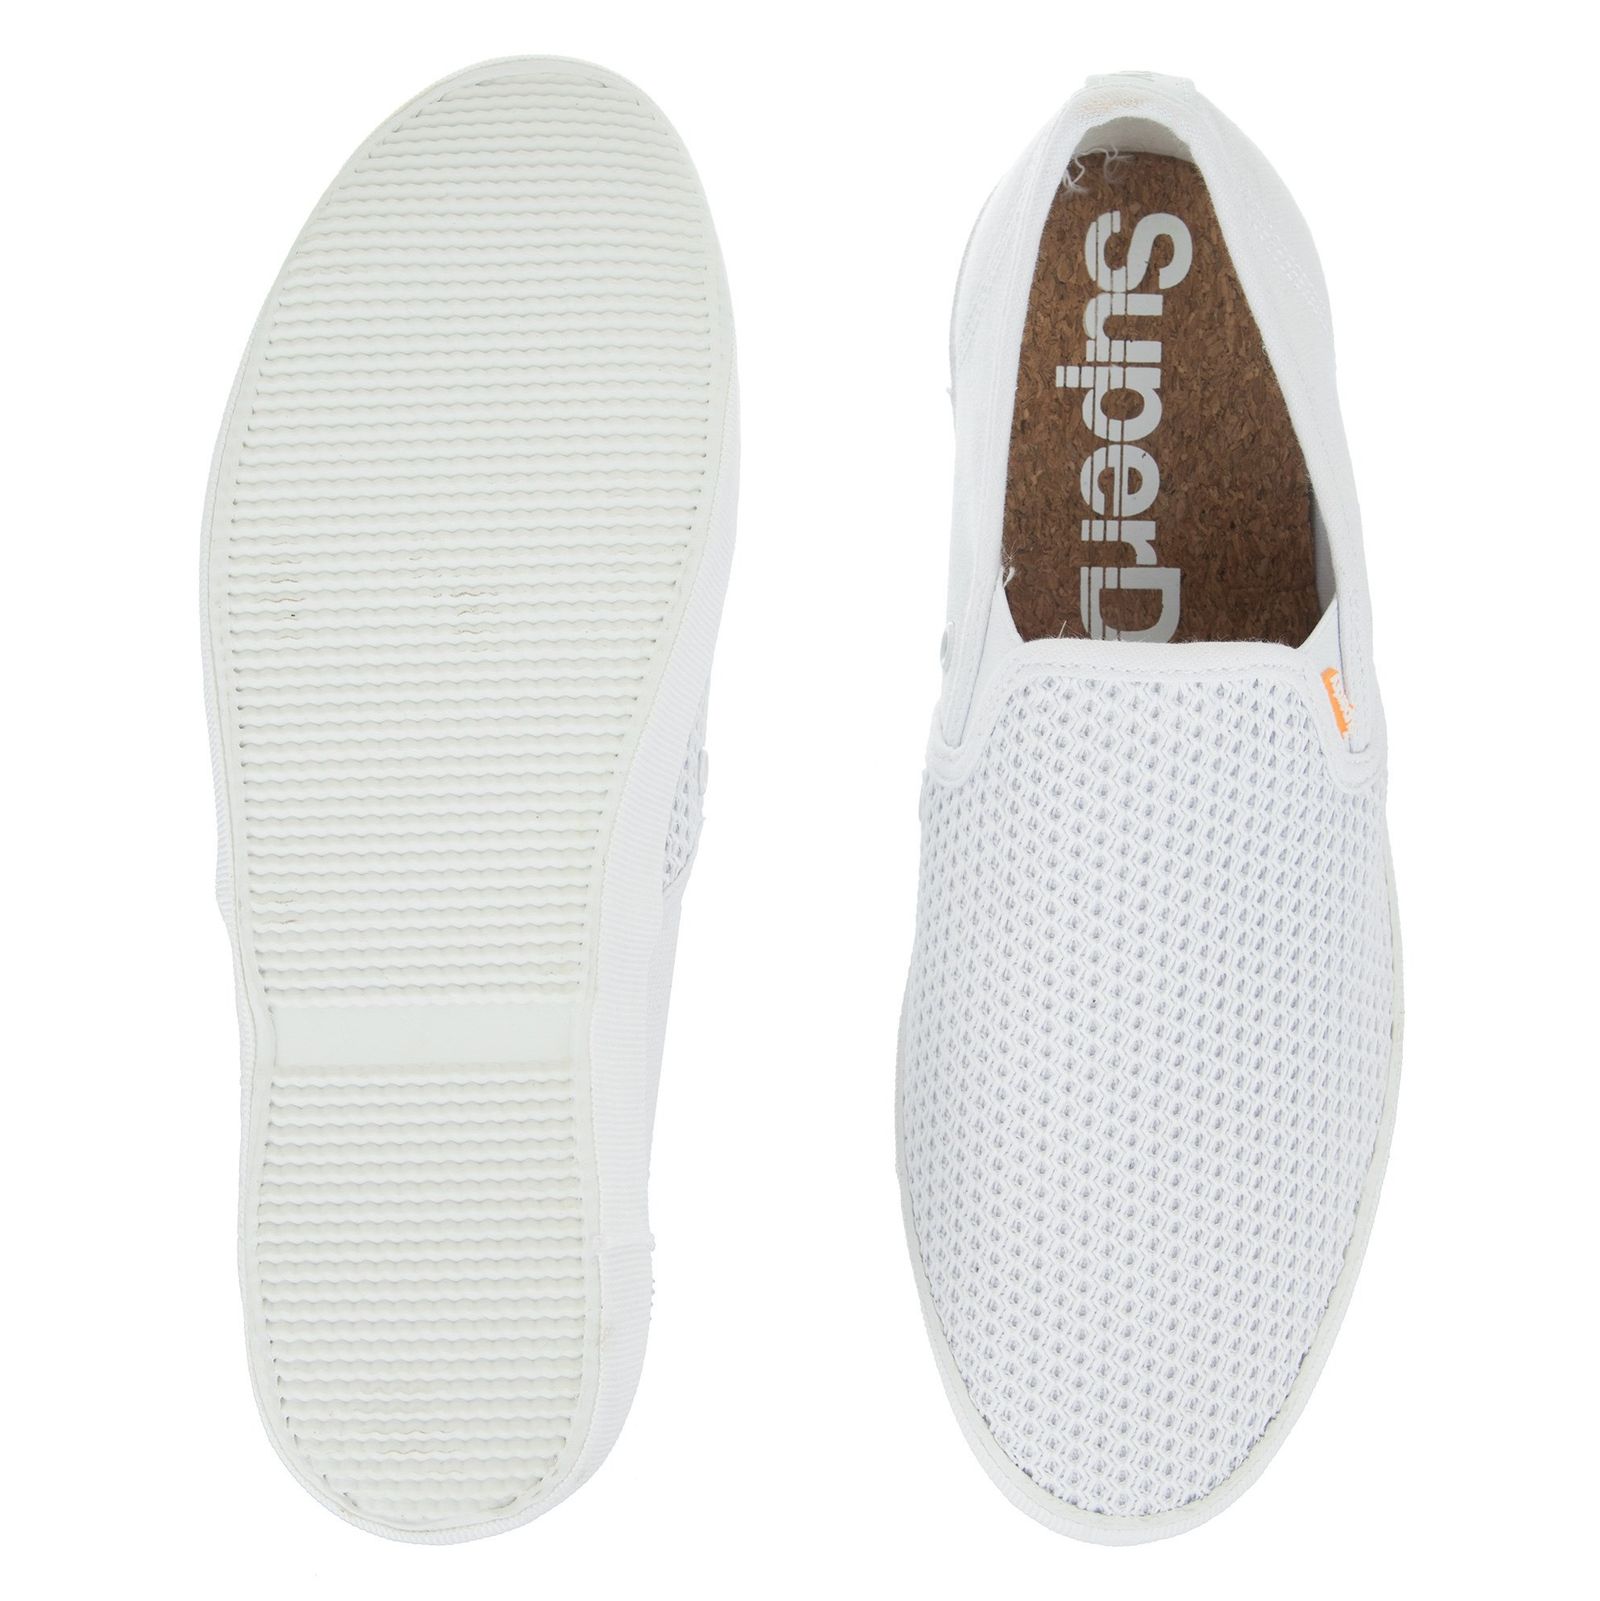 کفش راحتی پارچه ای مردانه Swimmer Slip On - سوپردرای - سفيد - 3